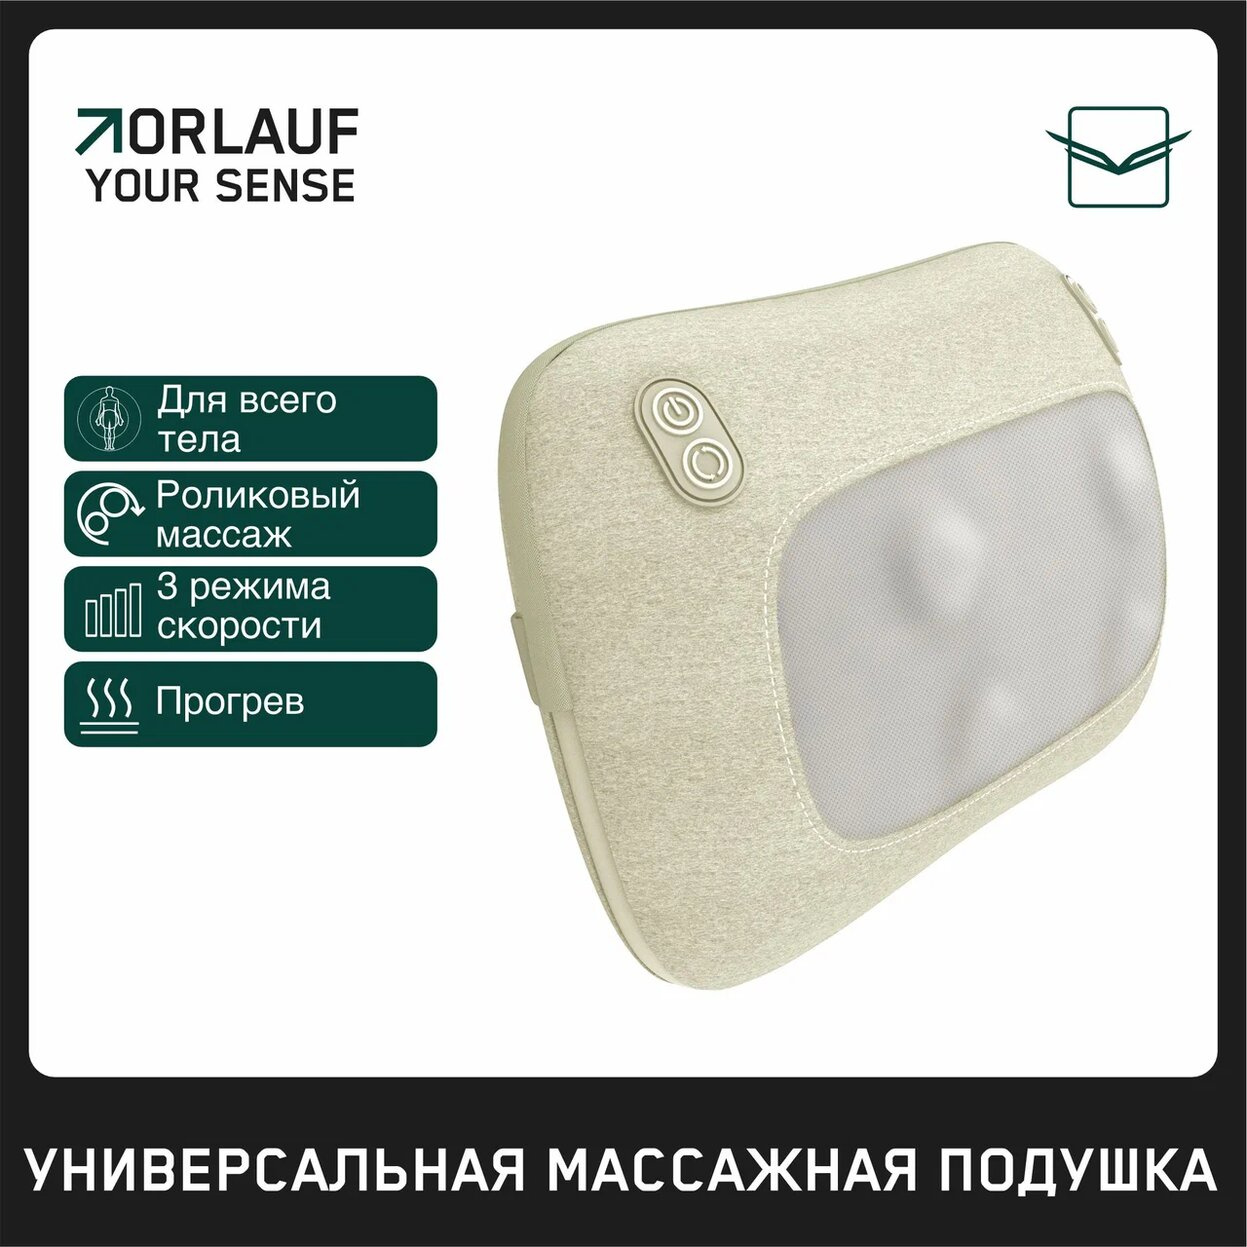 Orlauf Your Sense из каталога устройств для массажа в Москве по цене 9400 ₽